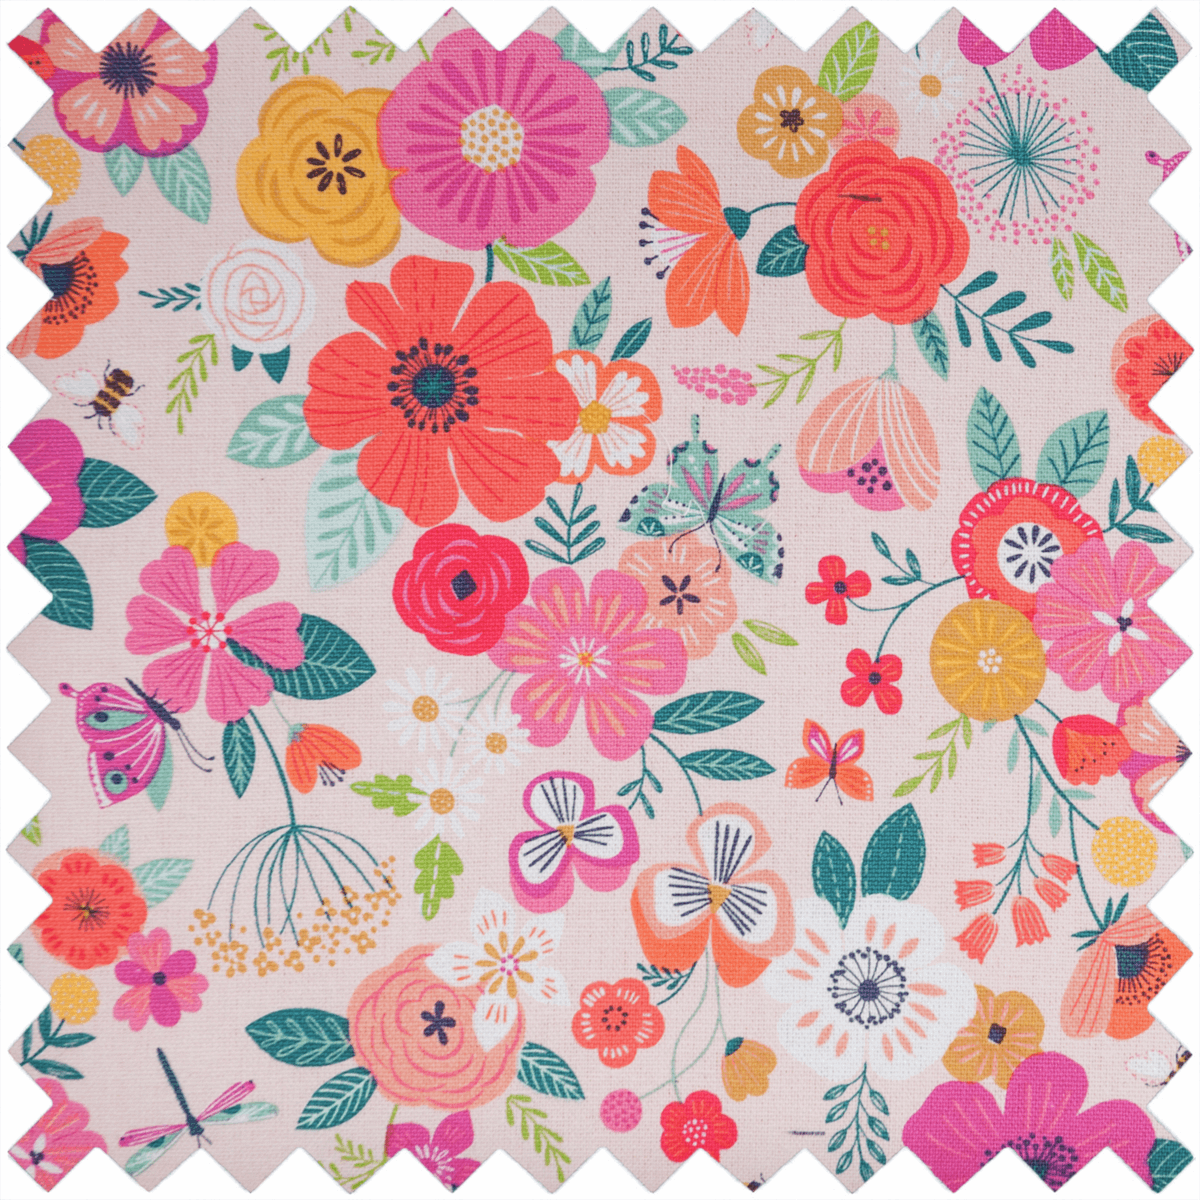 Floral Garden Sewing Machine Bag Pink (Matt PVC)